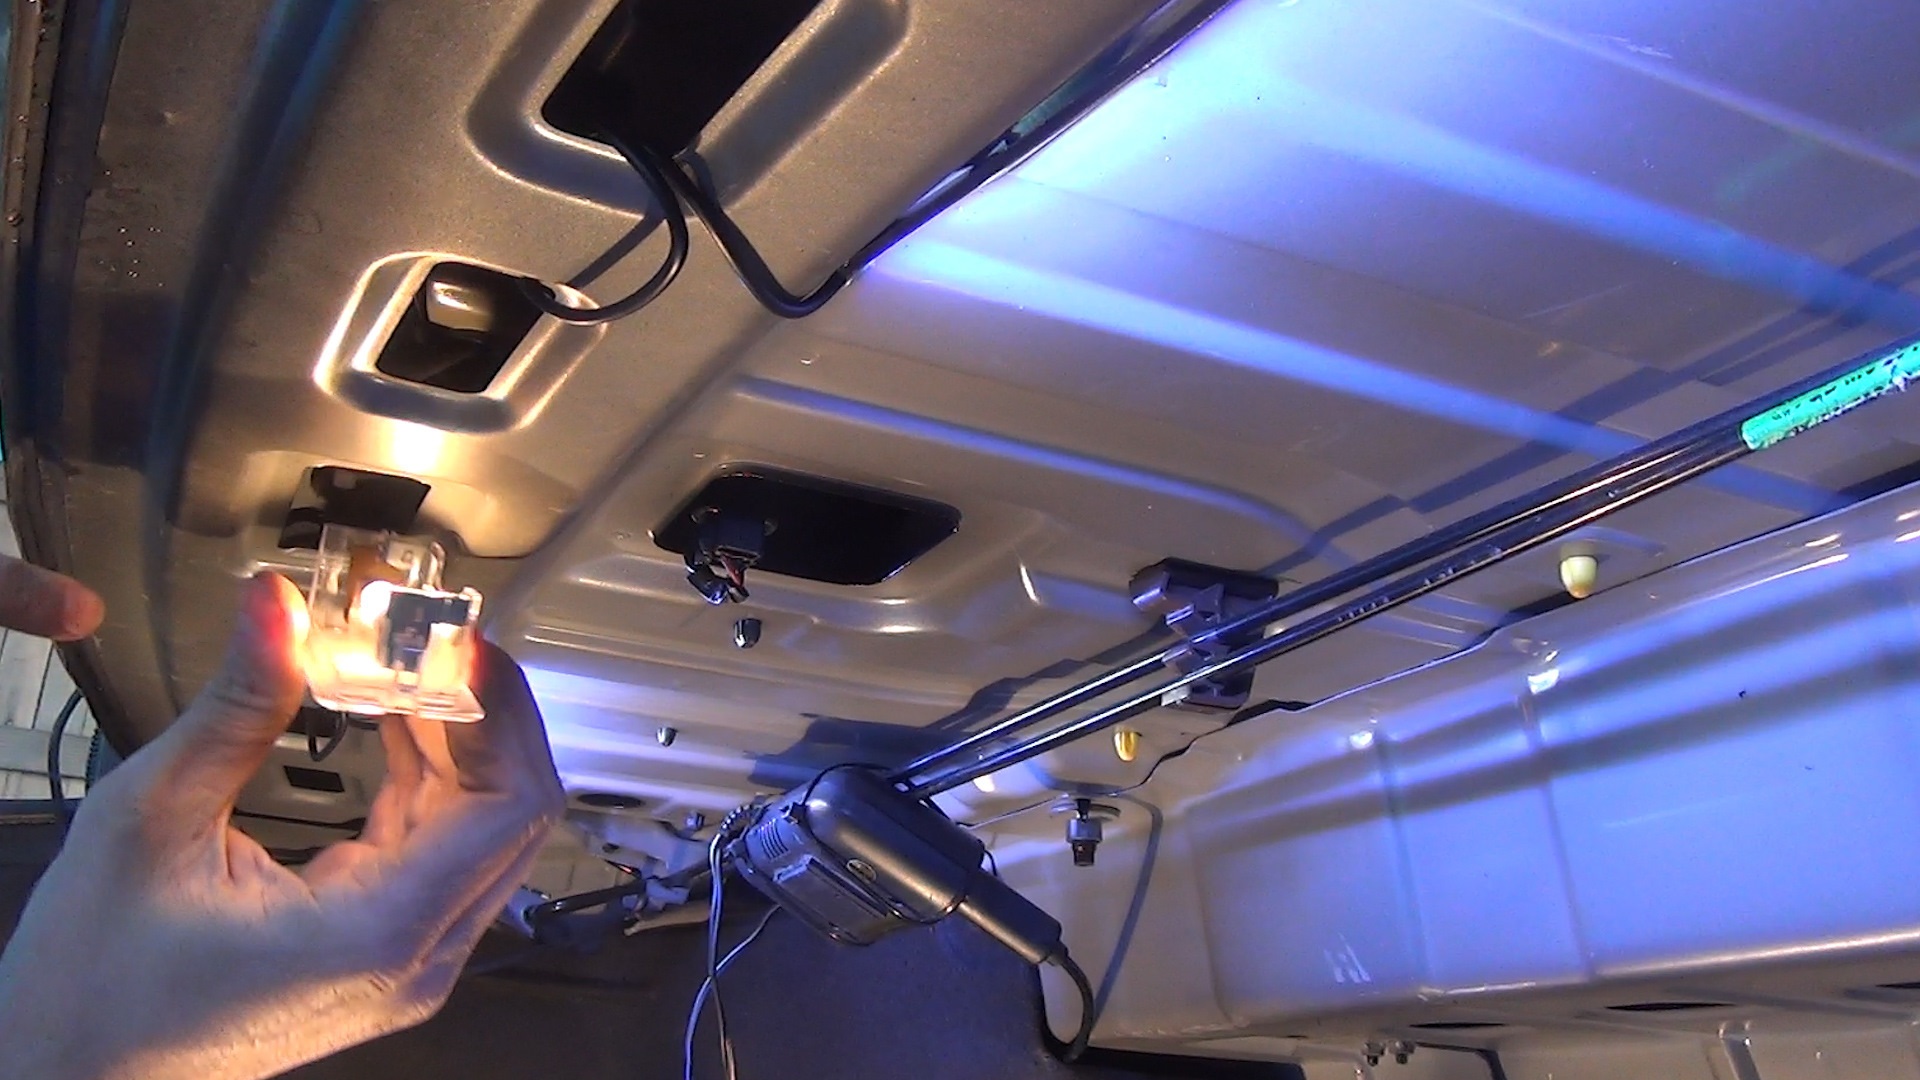 Монтаж и варианты подключений подсветки для багажника